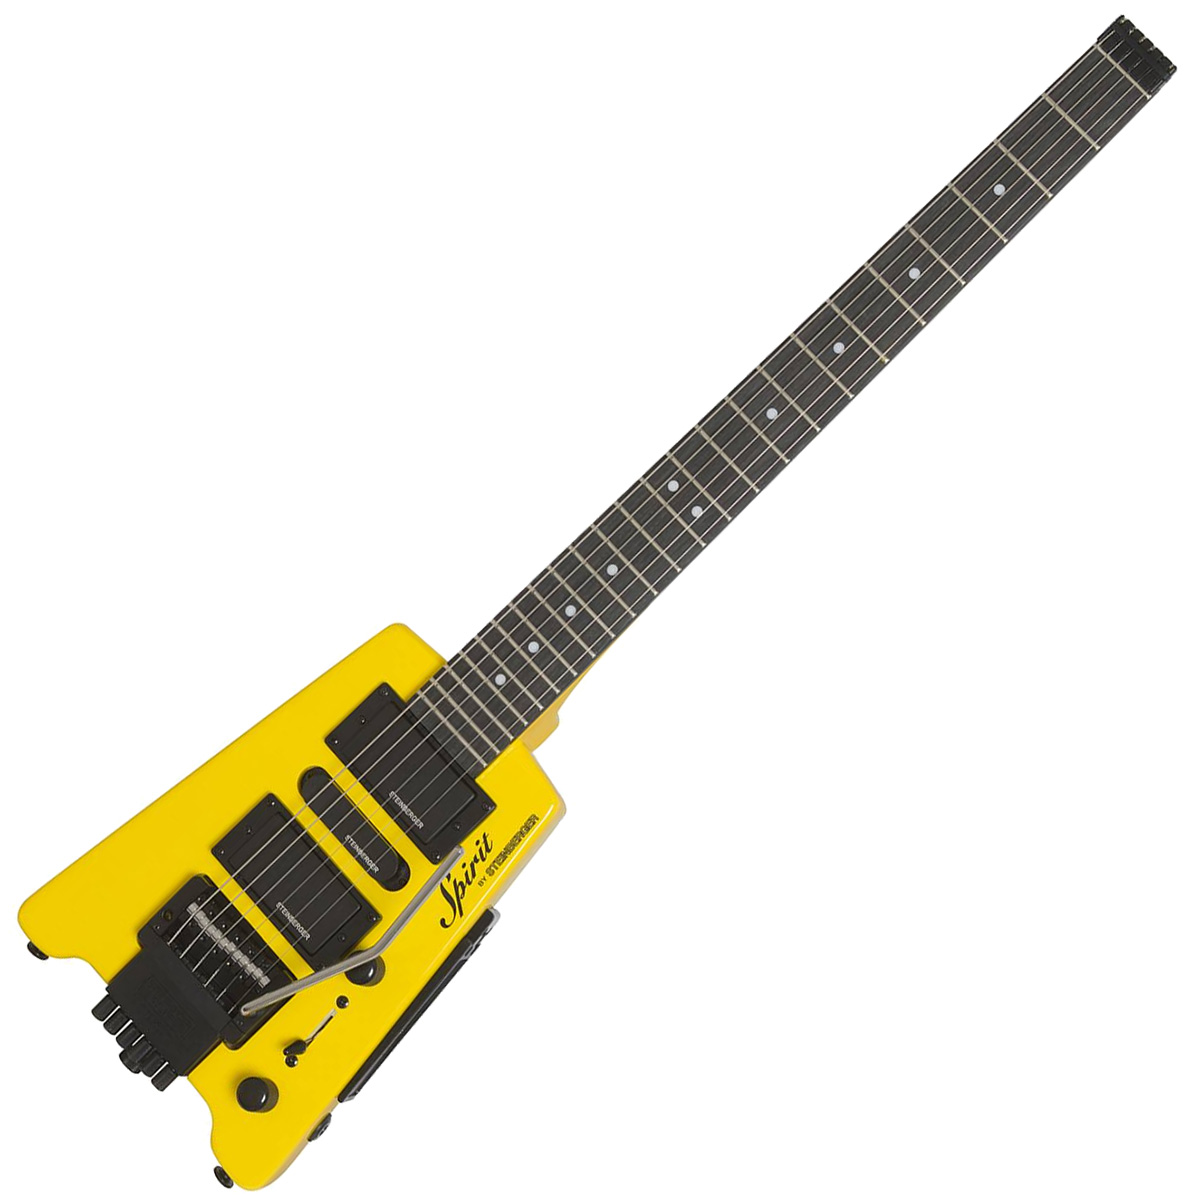 島村楽器大分店に、Steinberger(スタインバーガー)のヘッドレスギター、『SPIRIT GT-PRO Deluxe Hot Rod Yellow』が入荷致しました！ スタインバーガーより、新しい優れたトラベルギター「GT-PRO Deluxe」が登場しました。革新的なスタインバーガー ボディ […]